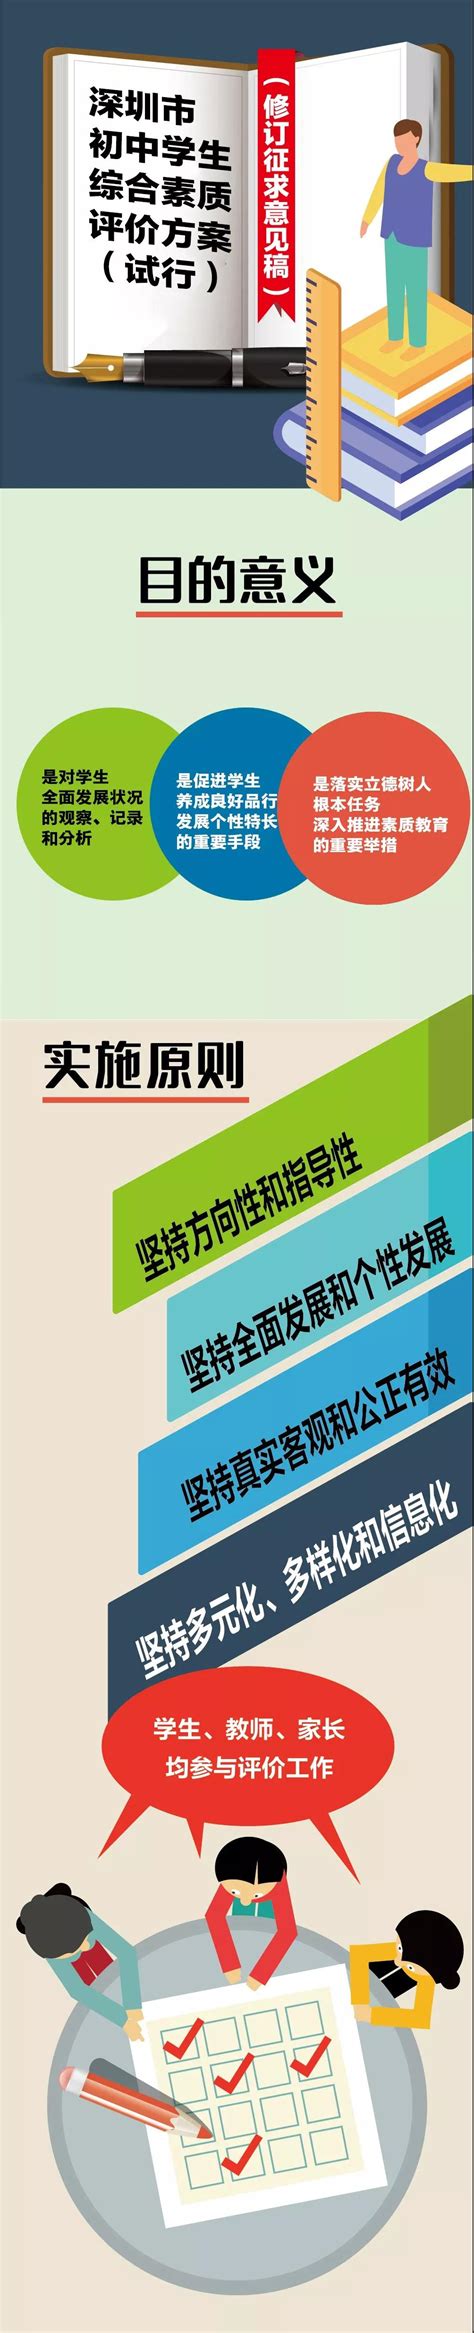 深圳召开全市教育领域项目建设指挥部第一次会议 教育类建设项目将在今年内迎来建设节点-图片新闻-深圳市教育局门户网站